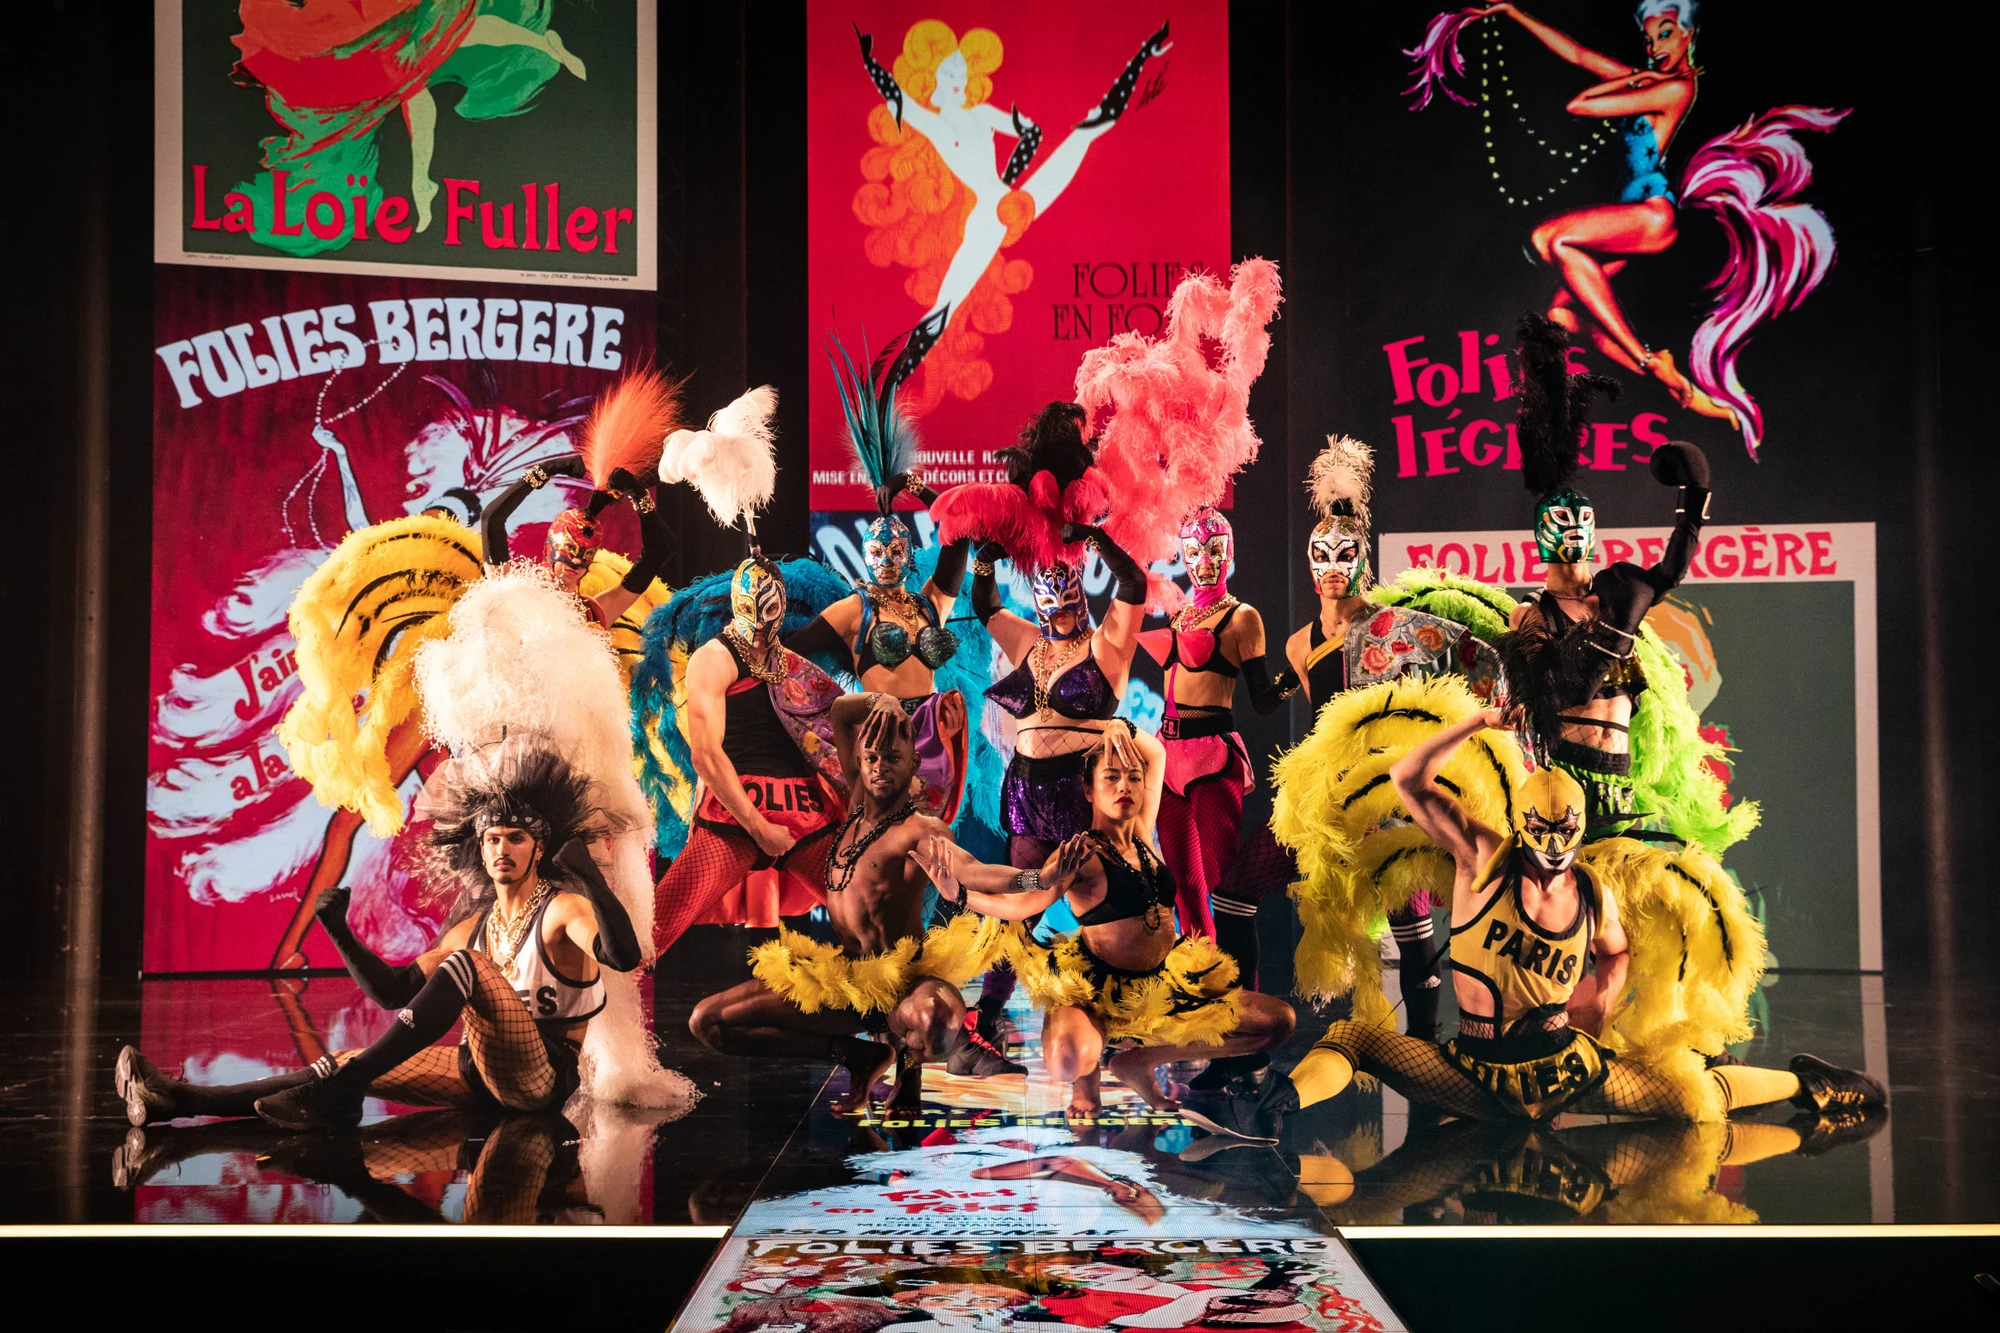 Jean Paul Gaultiers Fashion Freak Show - Männer in auffälligen Kostümen, Netzstrumpfhosen, Federn posieren auf der Bühne